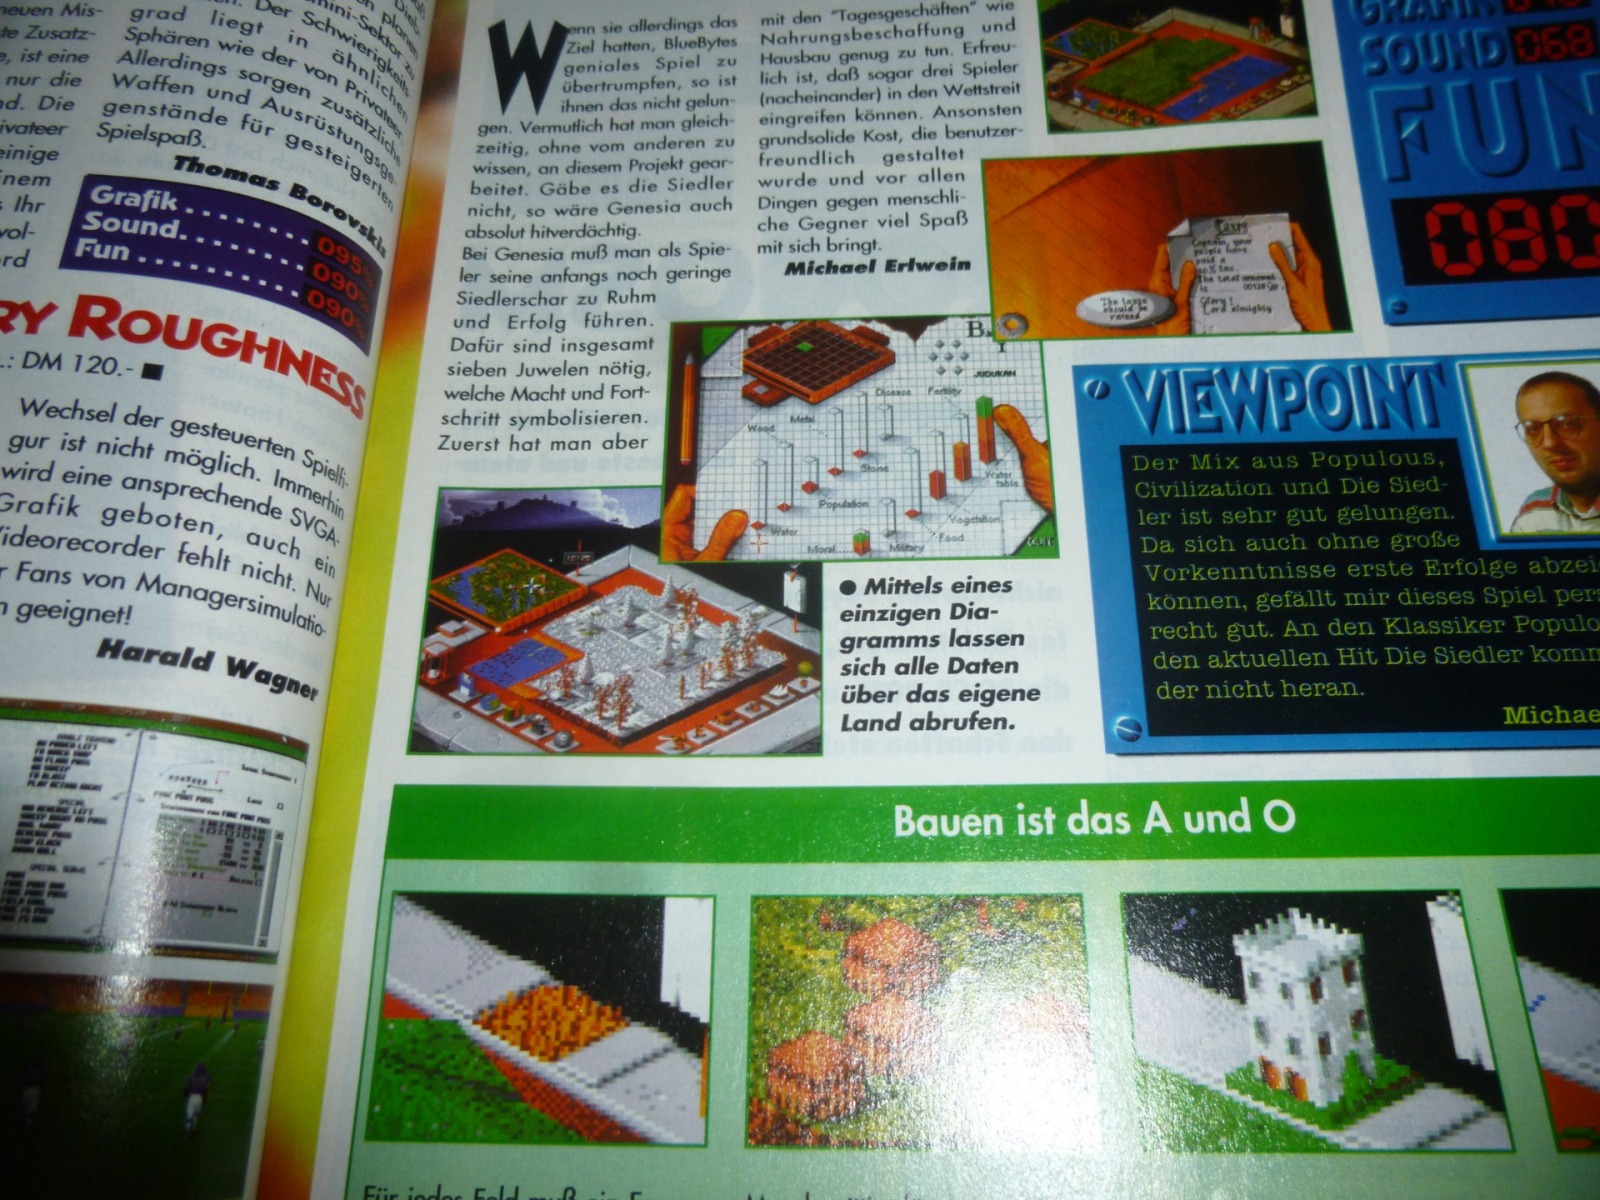 Play Time - Das Computer- und Videospiele-Magazin - Ausgabe 5/94 1994 12